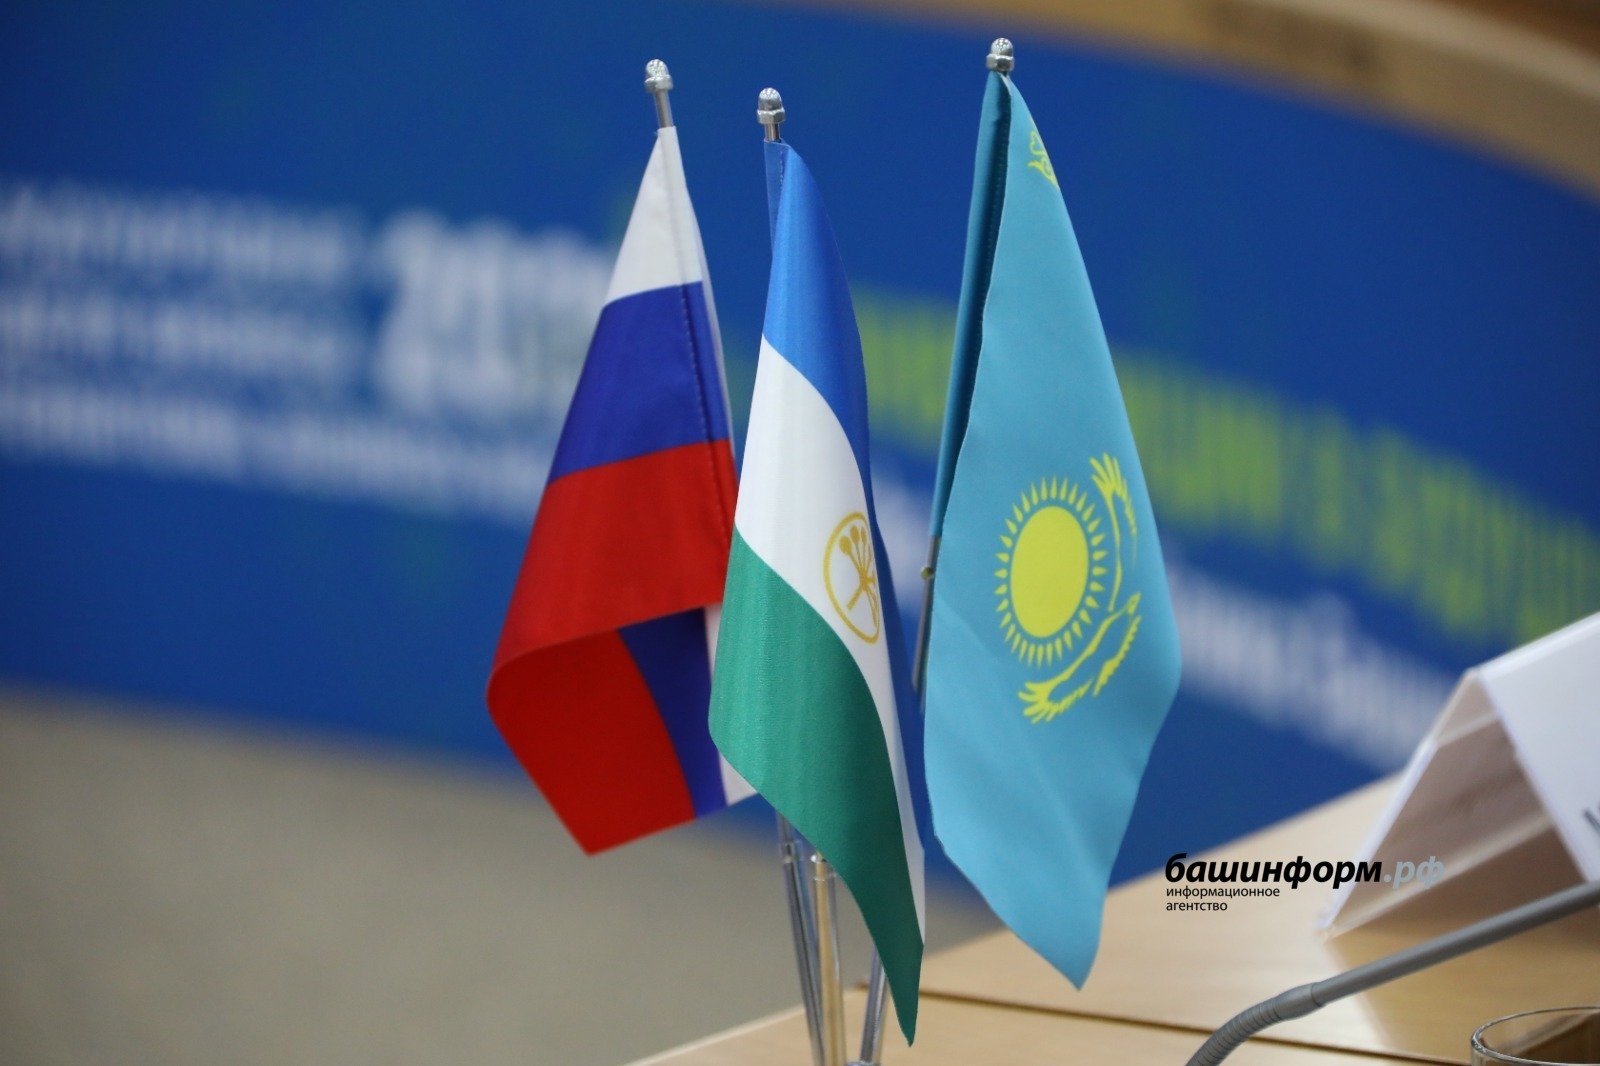 Деятельность рабочей группы по развитию сотрудничества Башкортостана и Казахстана положительно оценена Владимиром Путиным